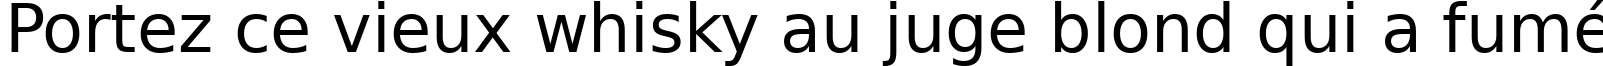 Пример написания шрифтом DejaVu Sans текста на французском